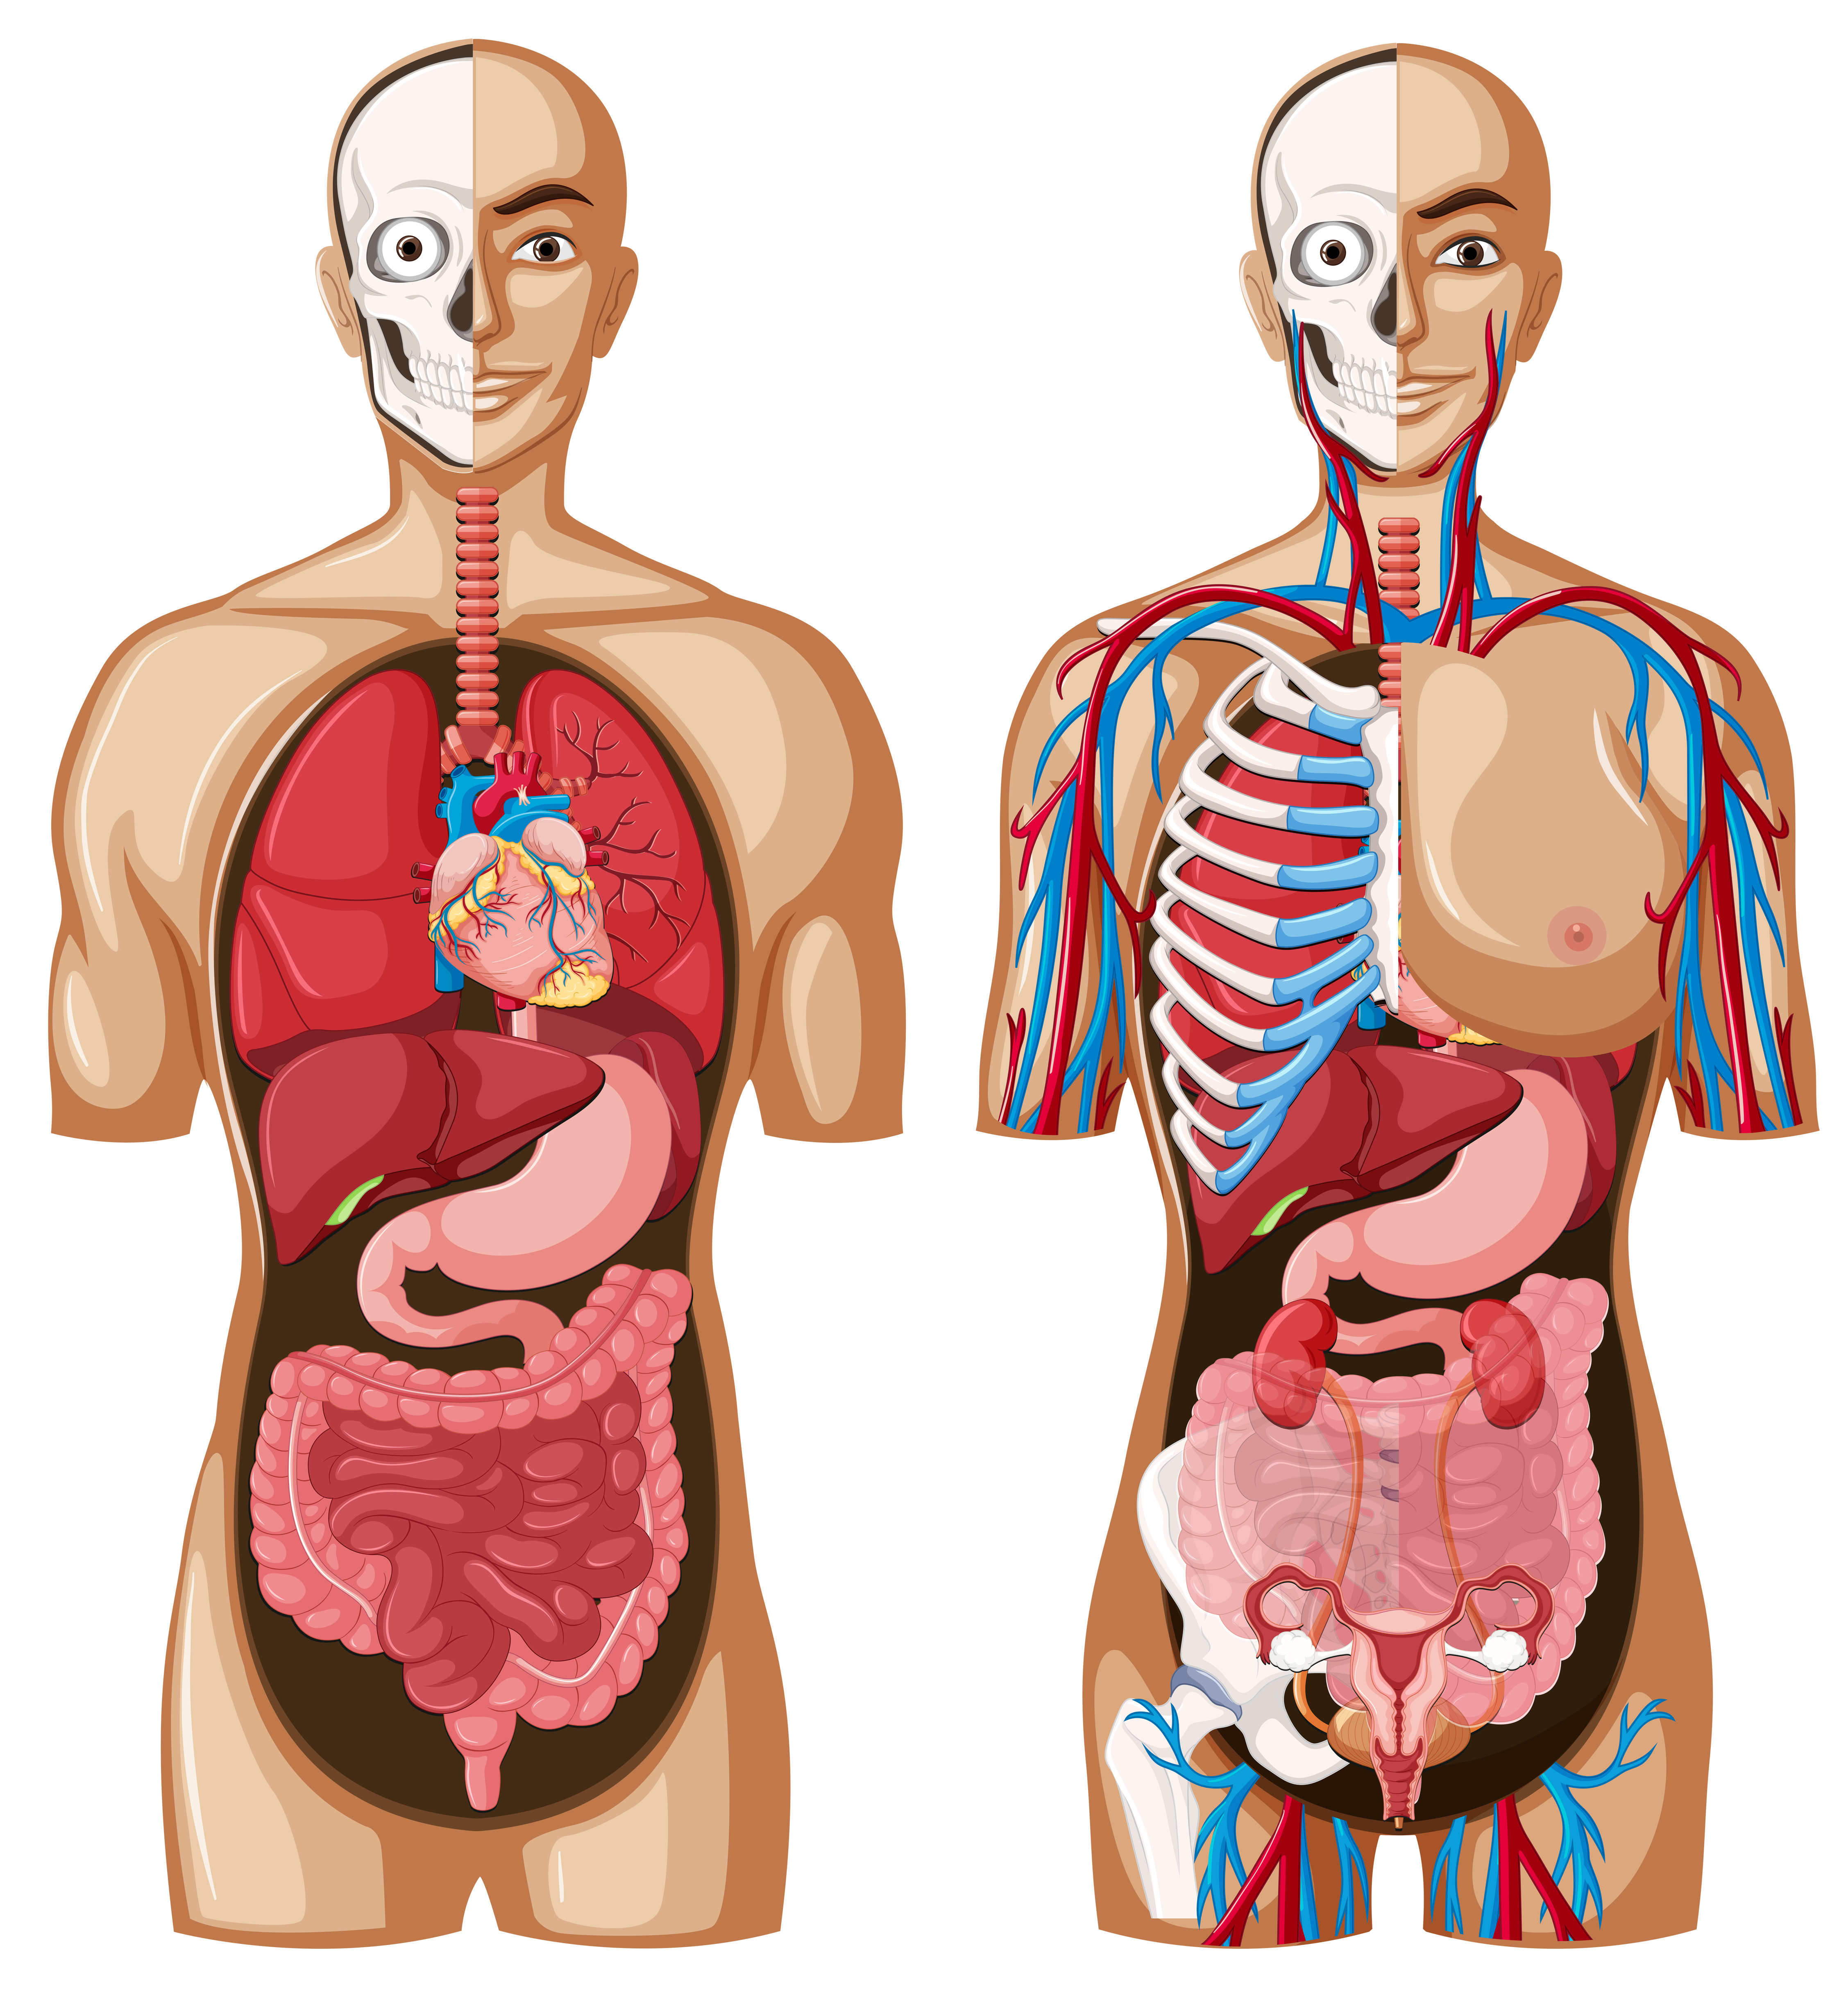 Imagen del cuerpo humano por dentro con sus órganos y sistemas